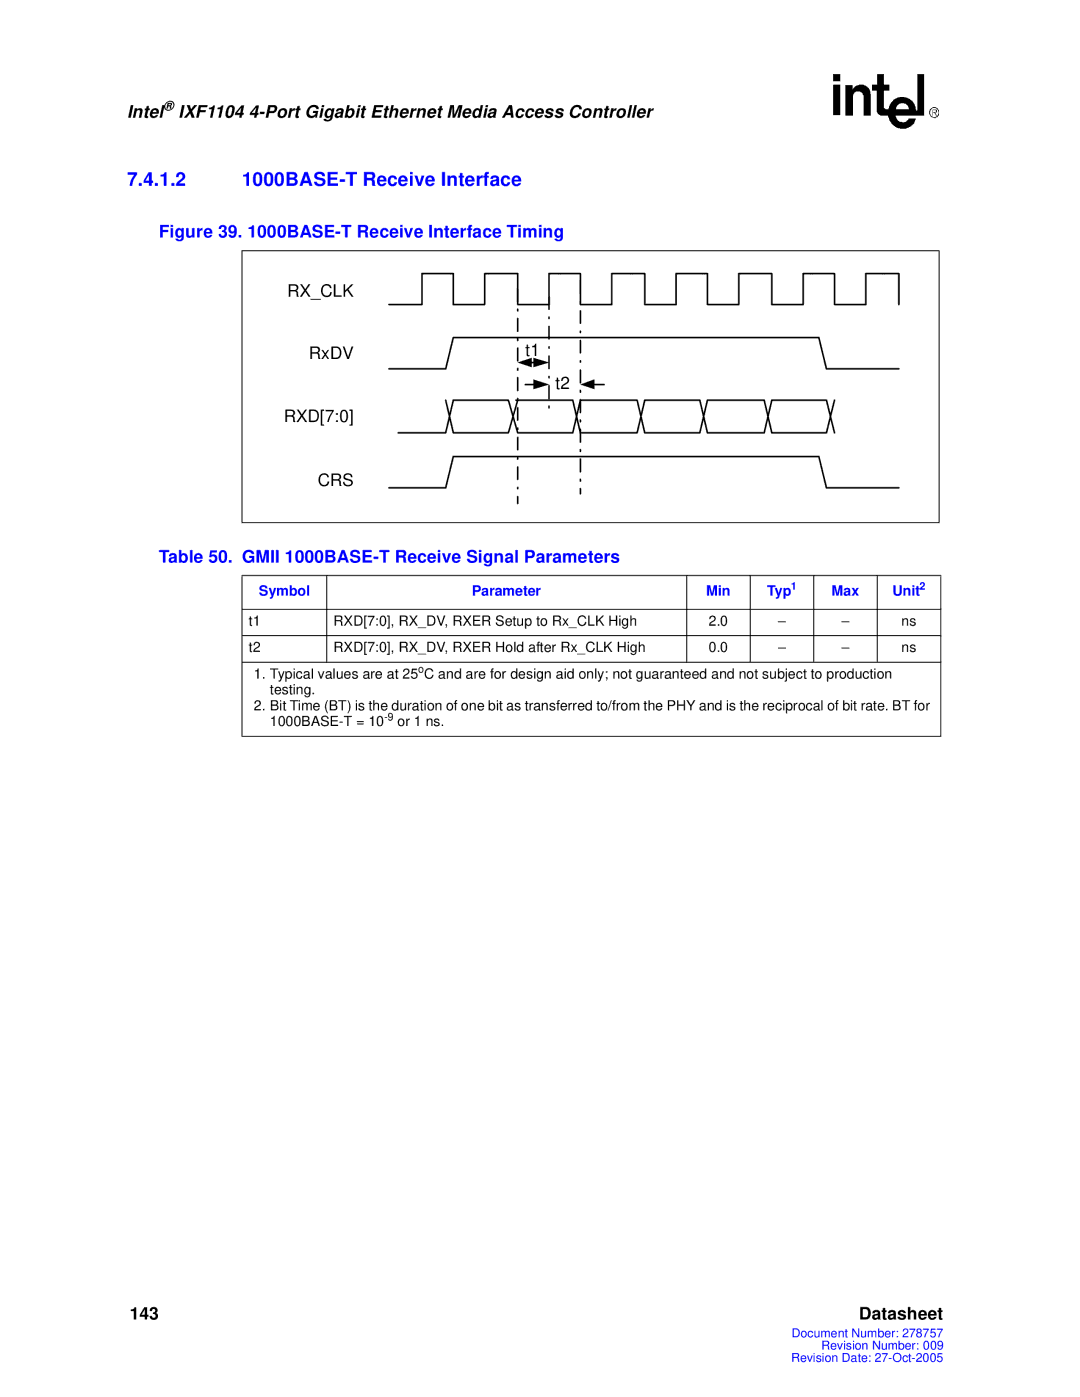 Intel IXF1104 manual 1.2 1000BASE-T Receive Interface, Gmii 1000BASE-T Receive Signal Parameters 